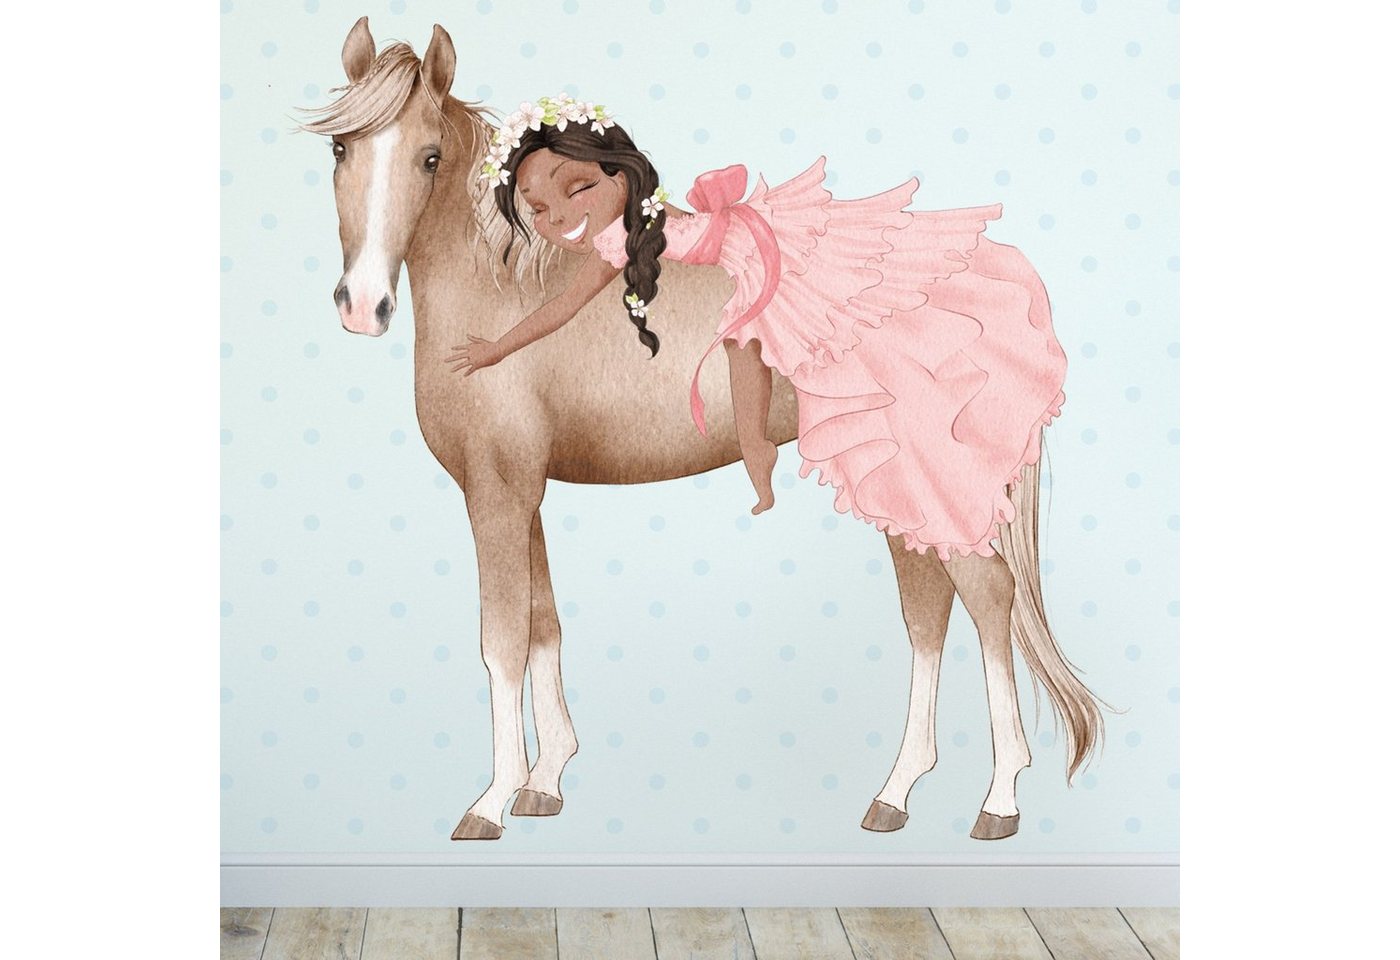 Sunnywall Wandtattoo Prinzessin Mädchen auf Pferd, Wandaufkleber Kinderzimmer, Pferde, selbstklebend, rückstandslos entfernbar von Sunnywall